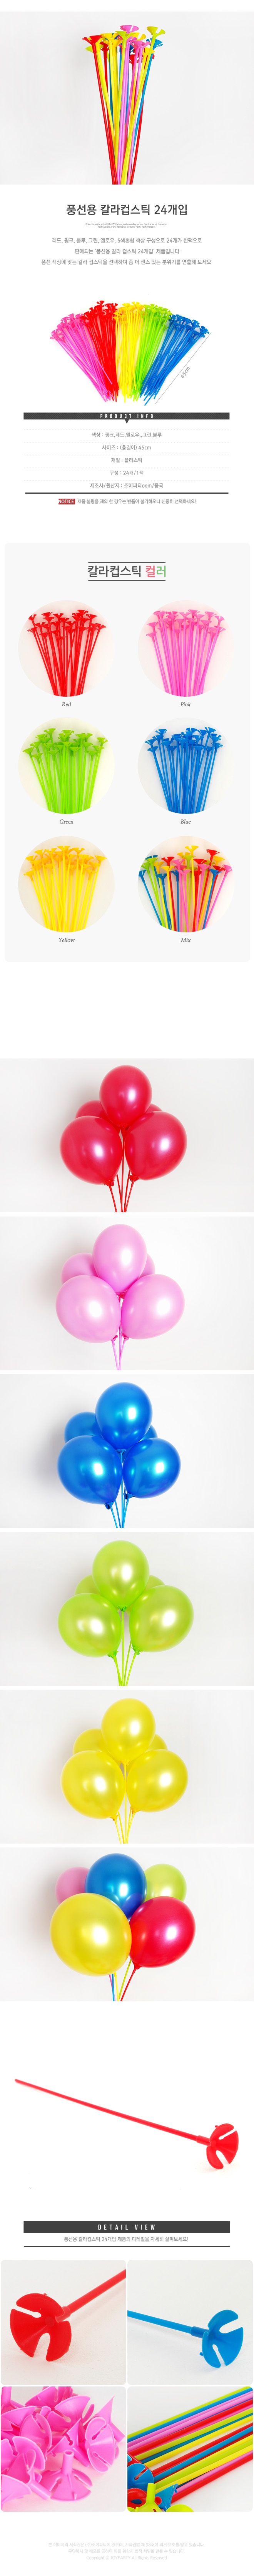 balloonst24p_roll_copy.jpg